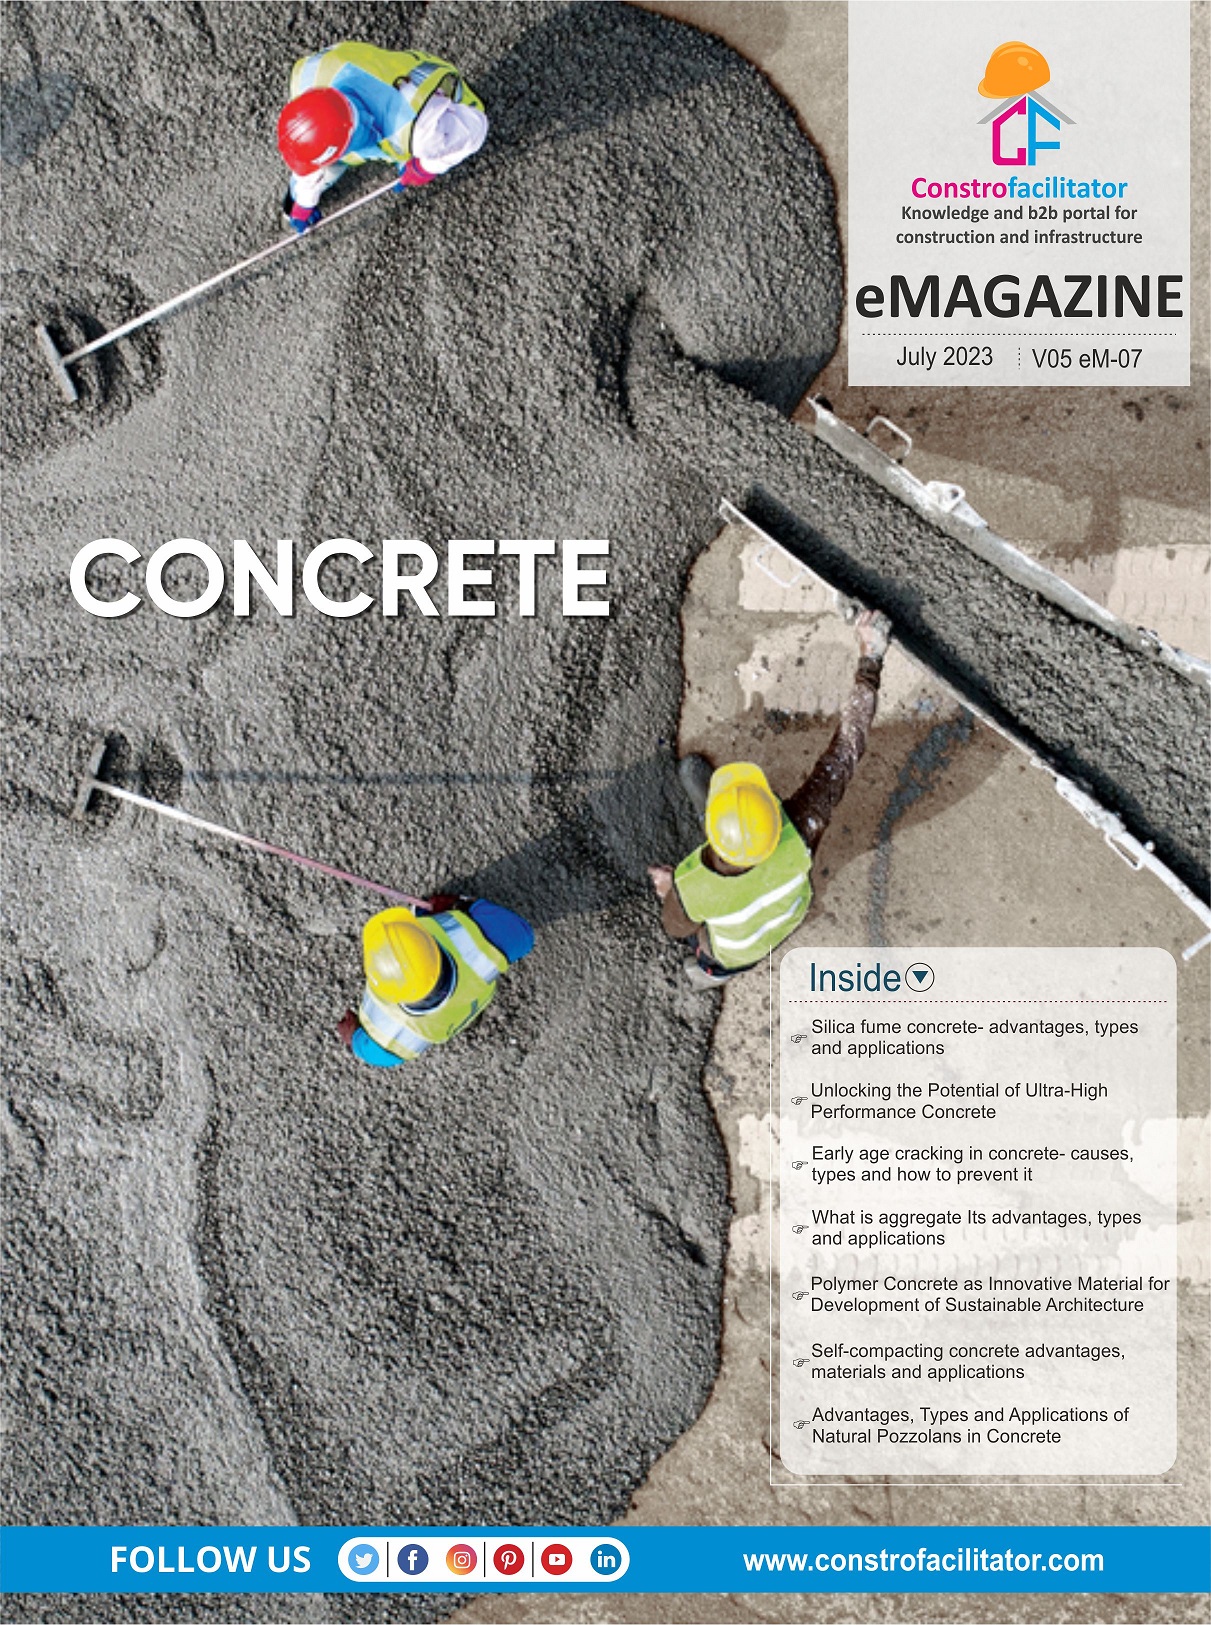 e-Magazine on Concrete